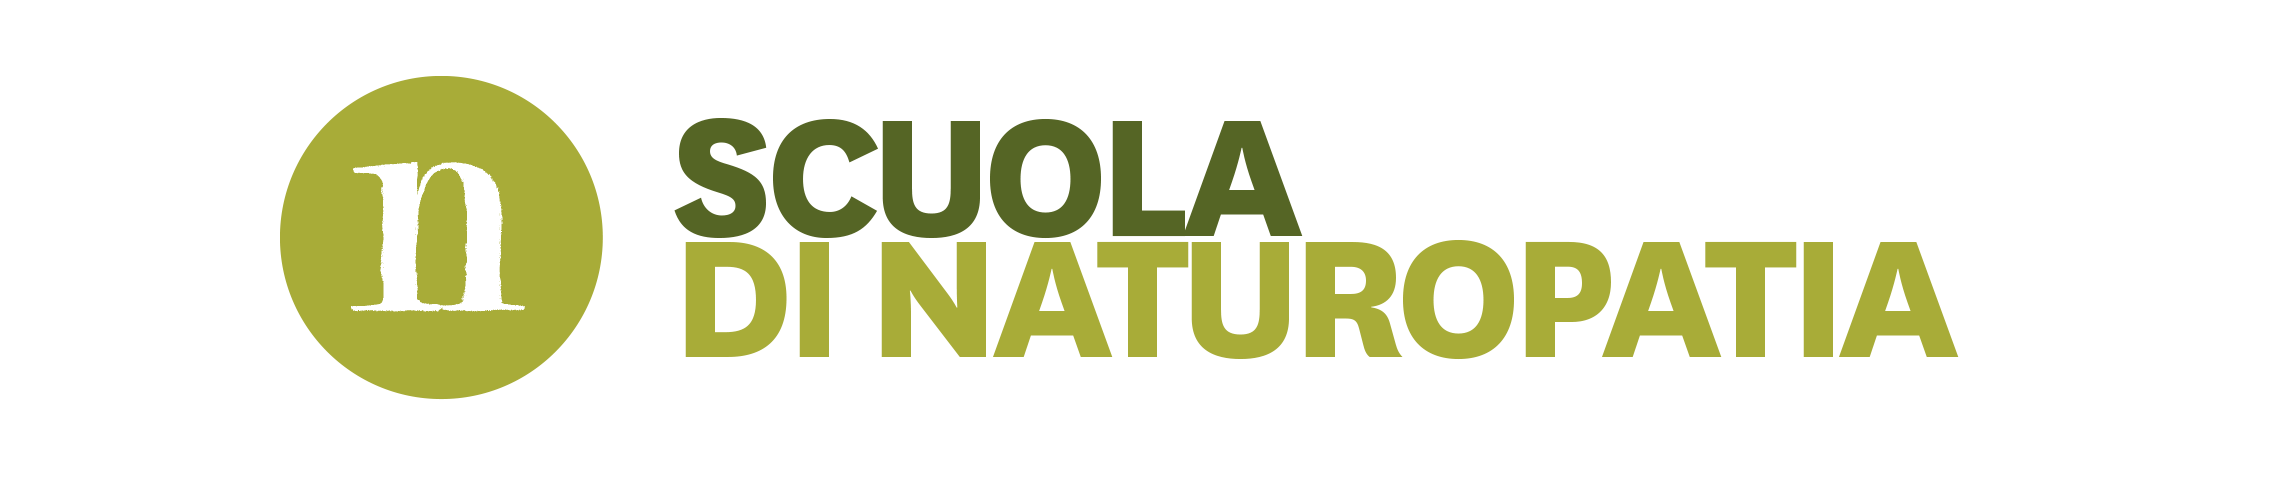 Scuola di naturopatia Bologna